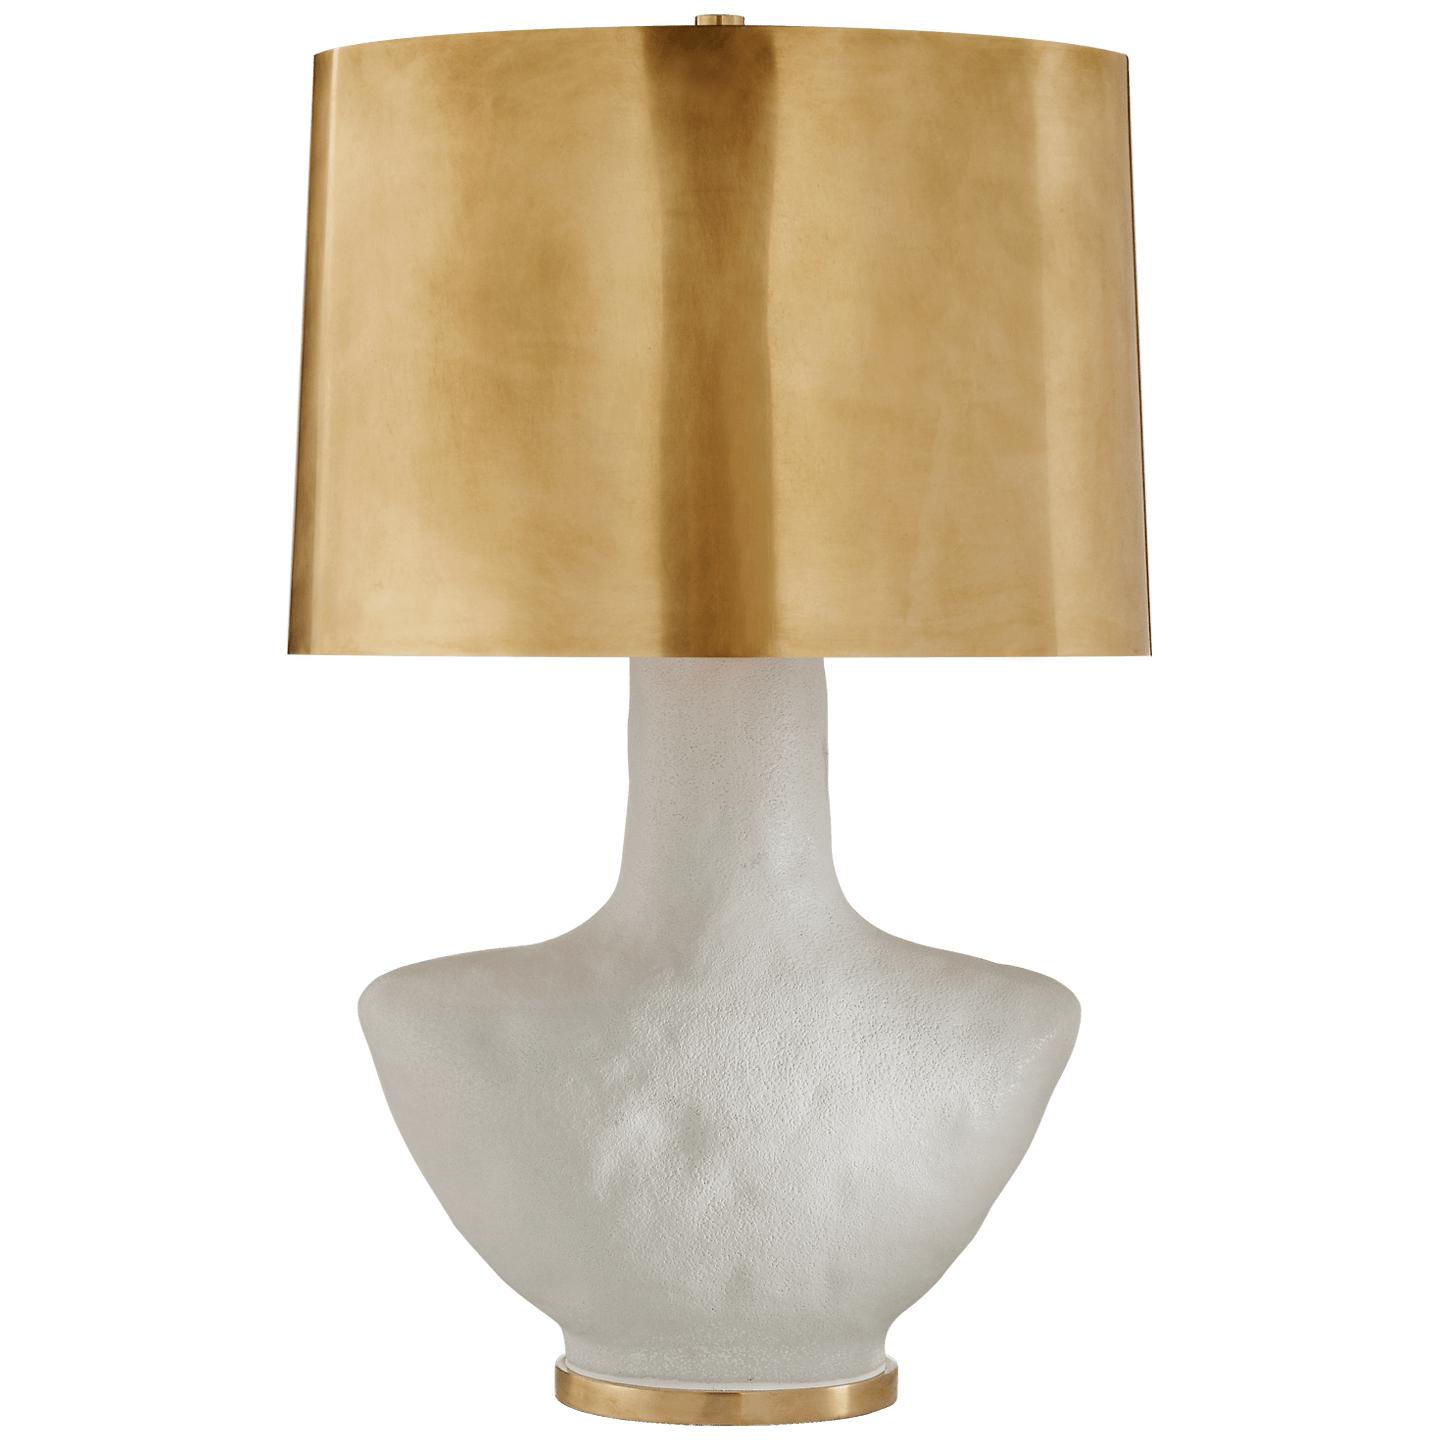 Купить Настольная лампа Armato Small Table Lamp в интернет-магазине roooms.ru